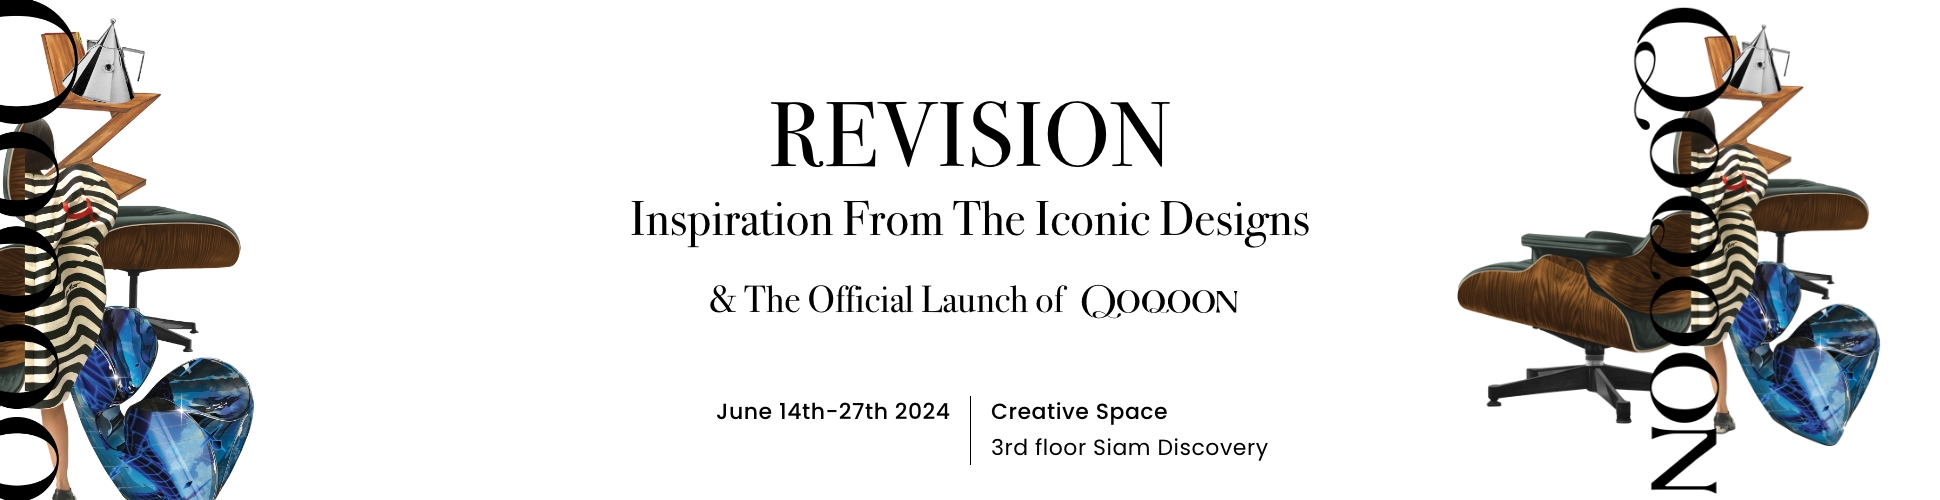 Invitation of Revision